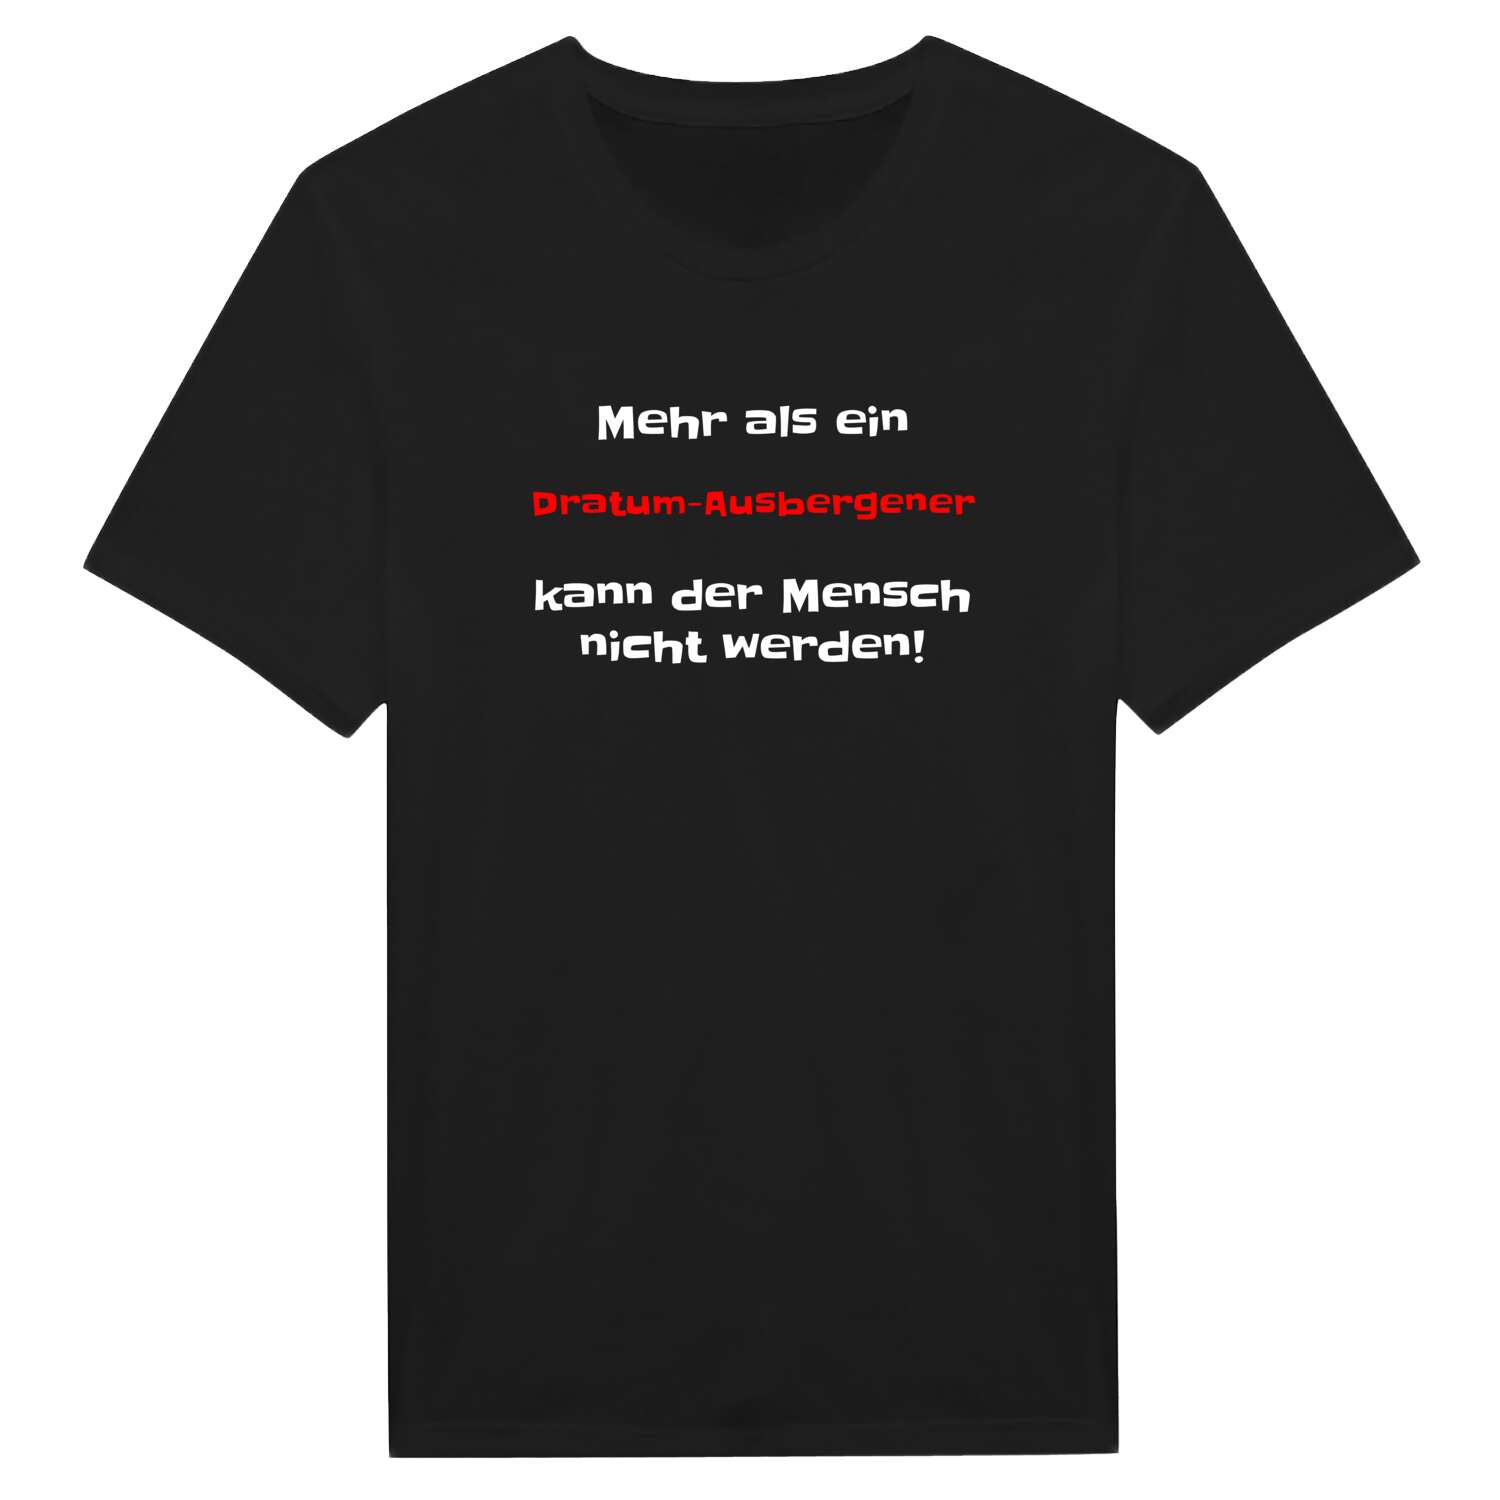 Dratum-Ausbergen T-Shirt »Mehr als ein«